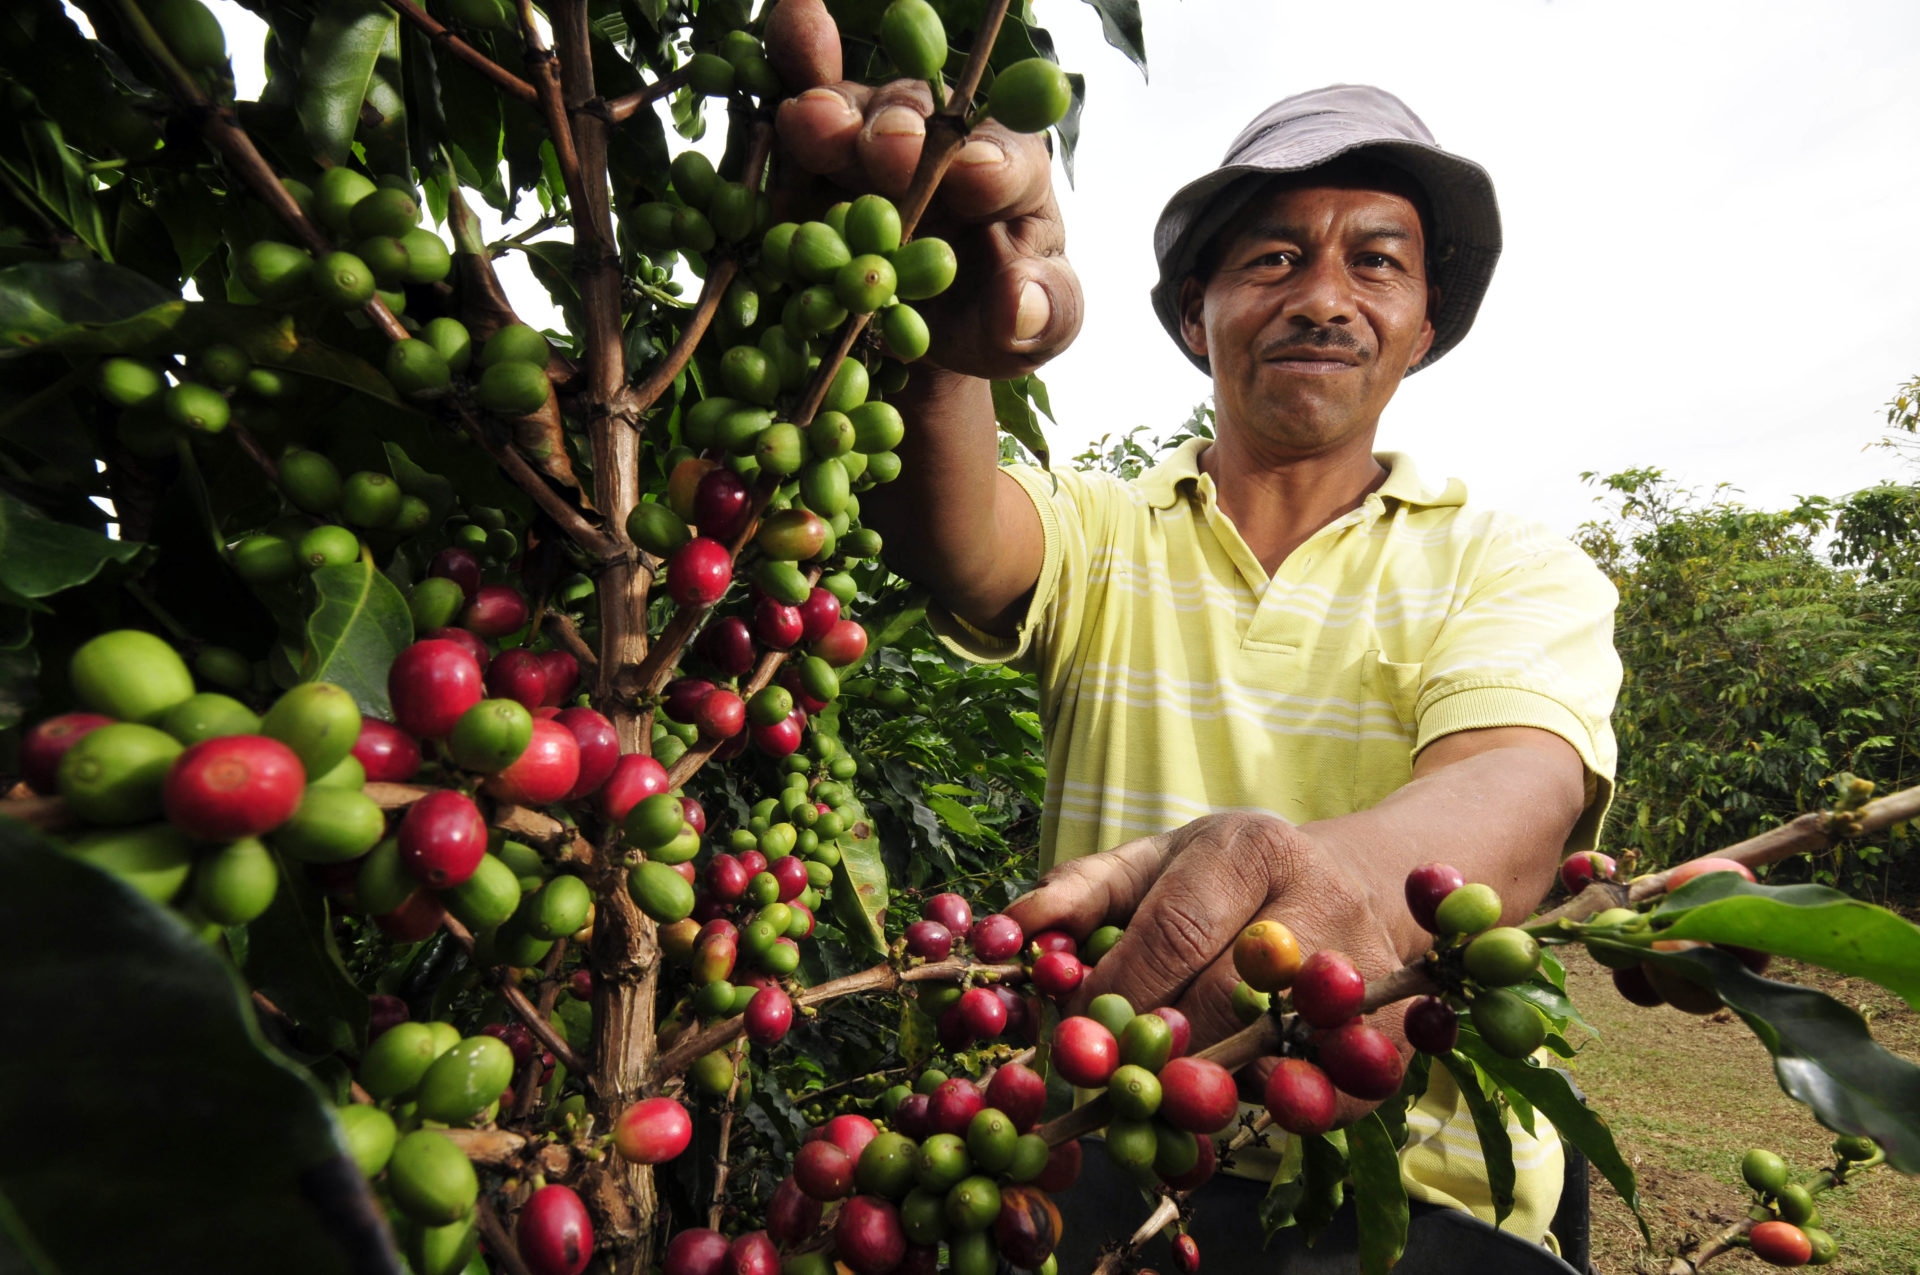 Fotografía de Campesino colombiano cosechando café